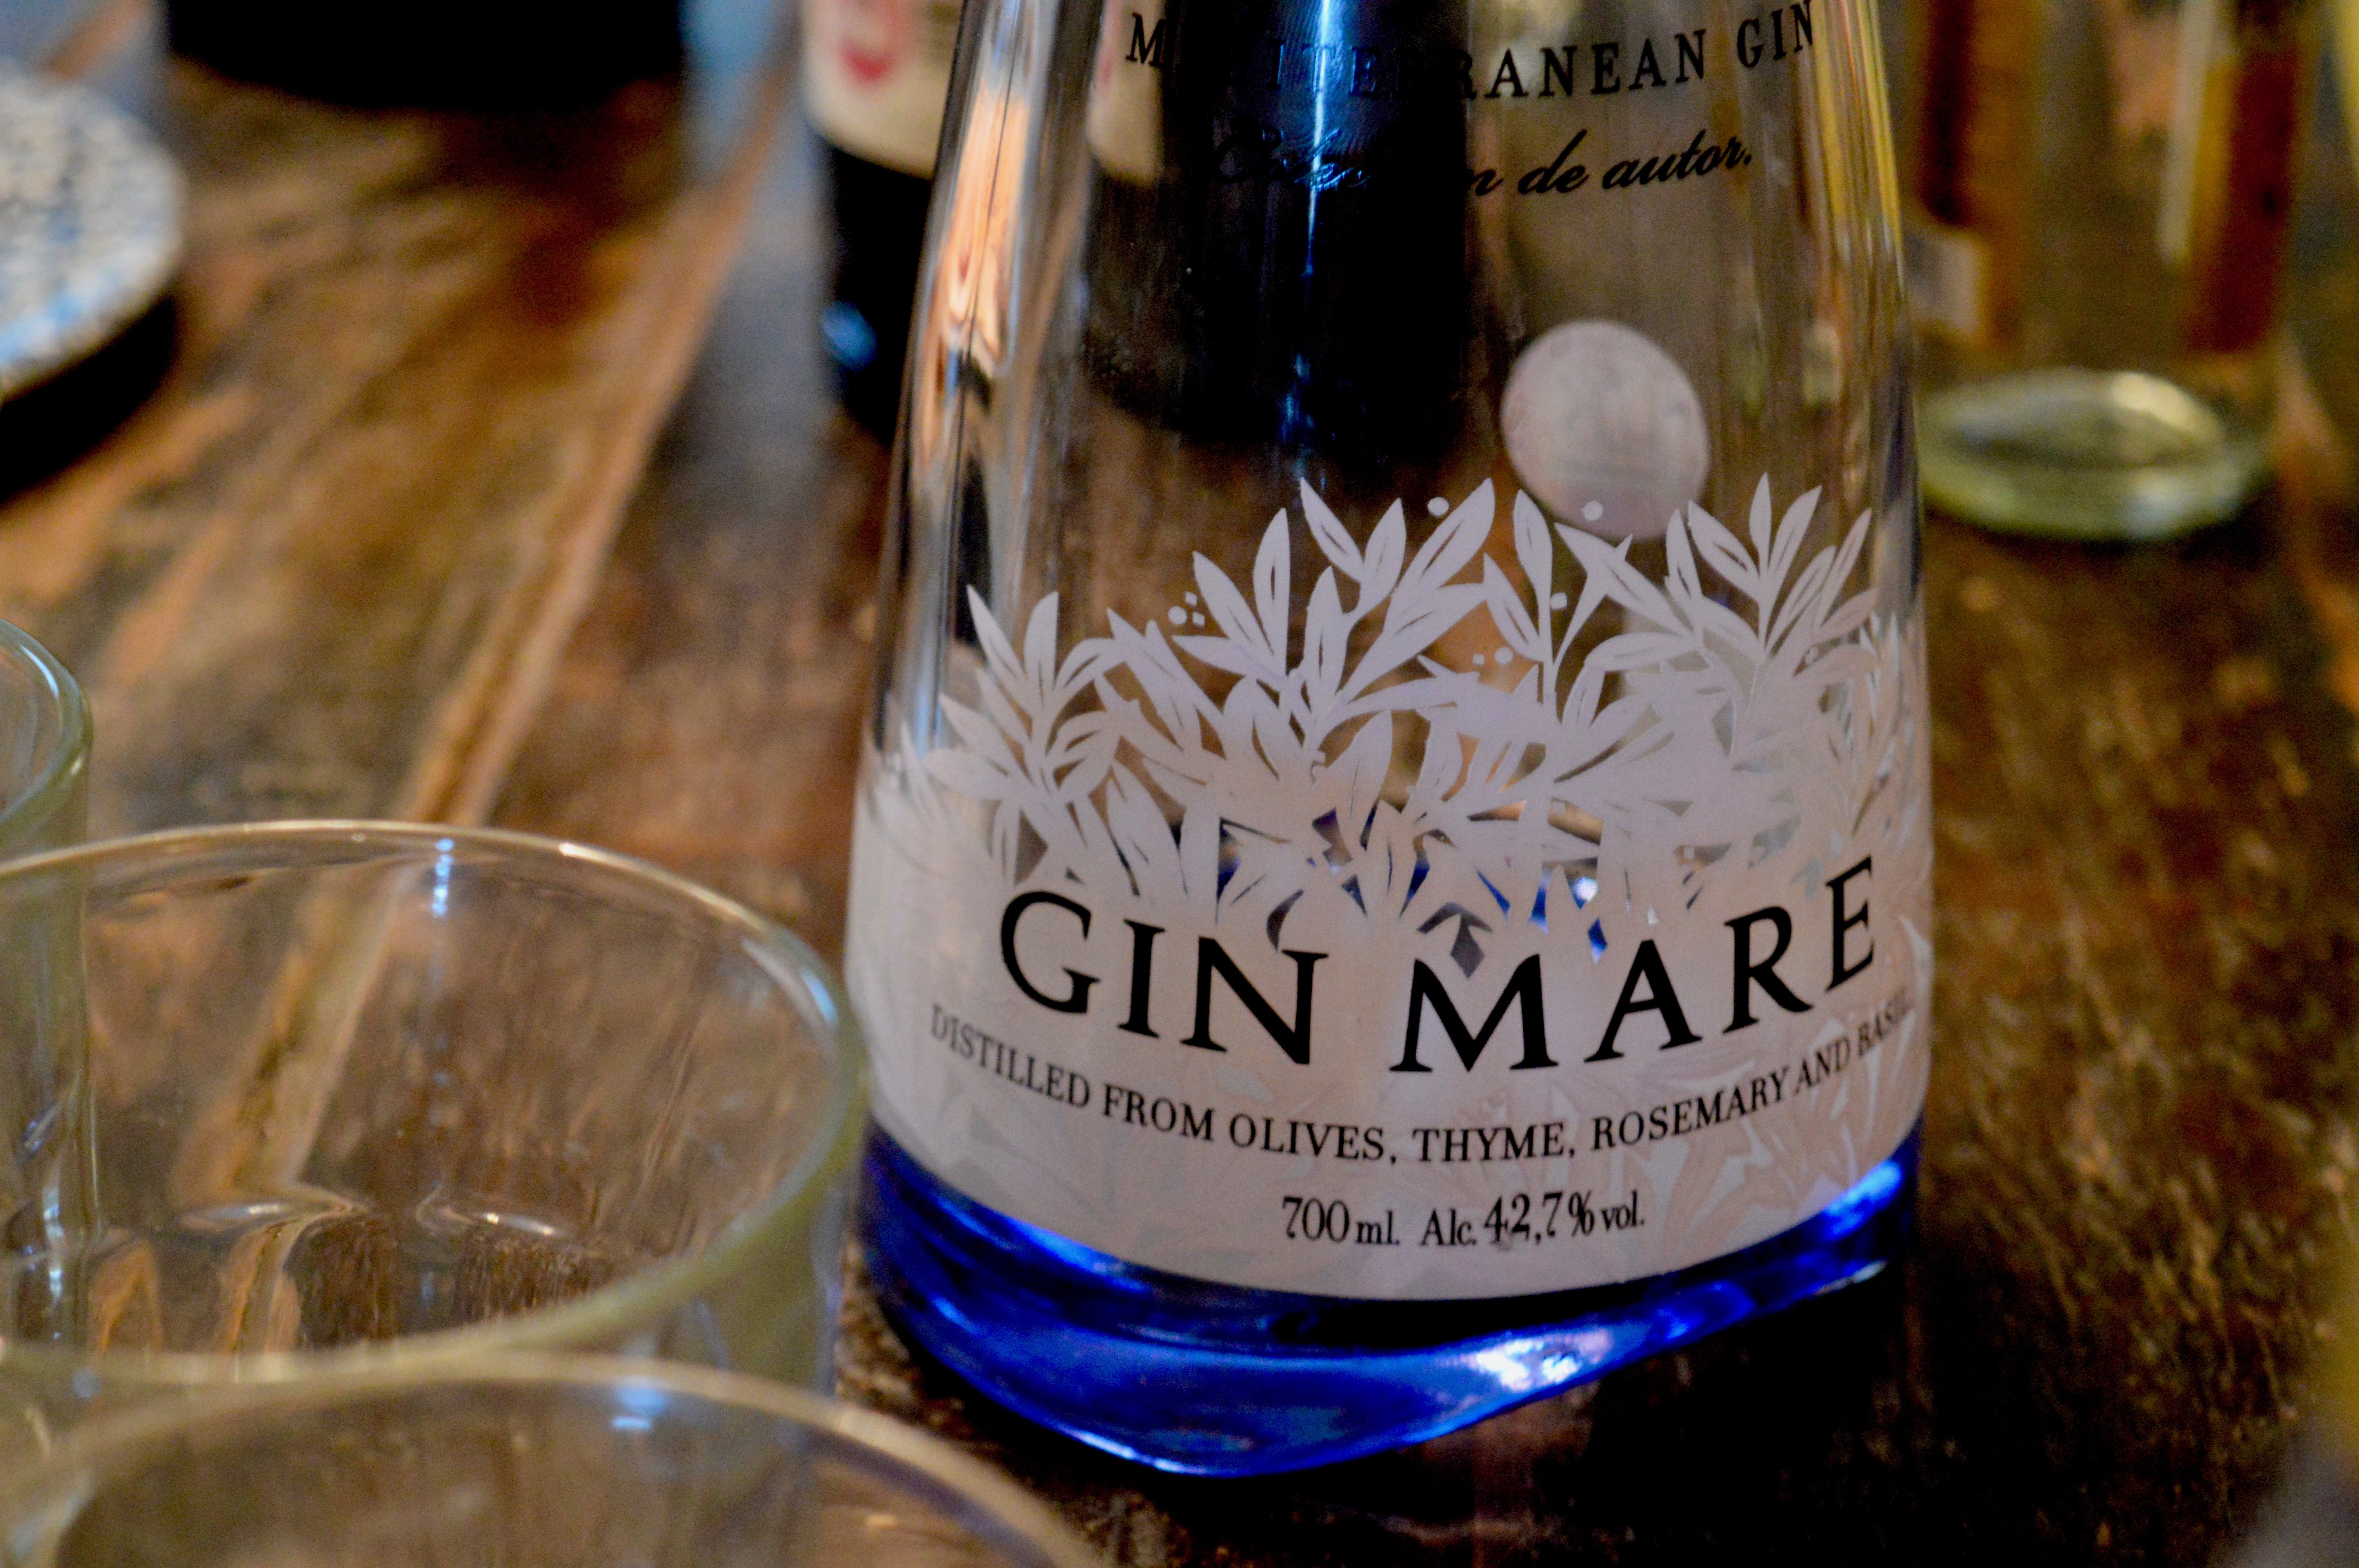 gin-mare-gin-masterclass-botanist-newcastle-elle-blonde-luxury-lifestyle-destination-blog